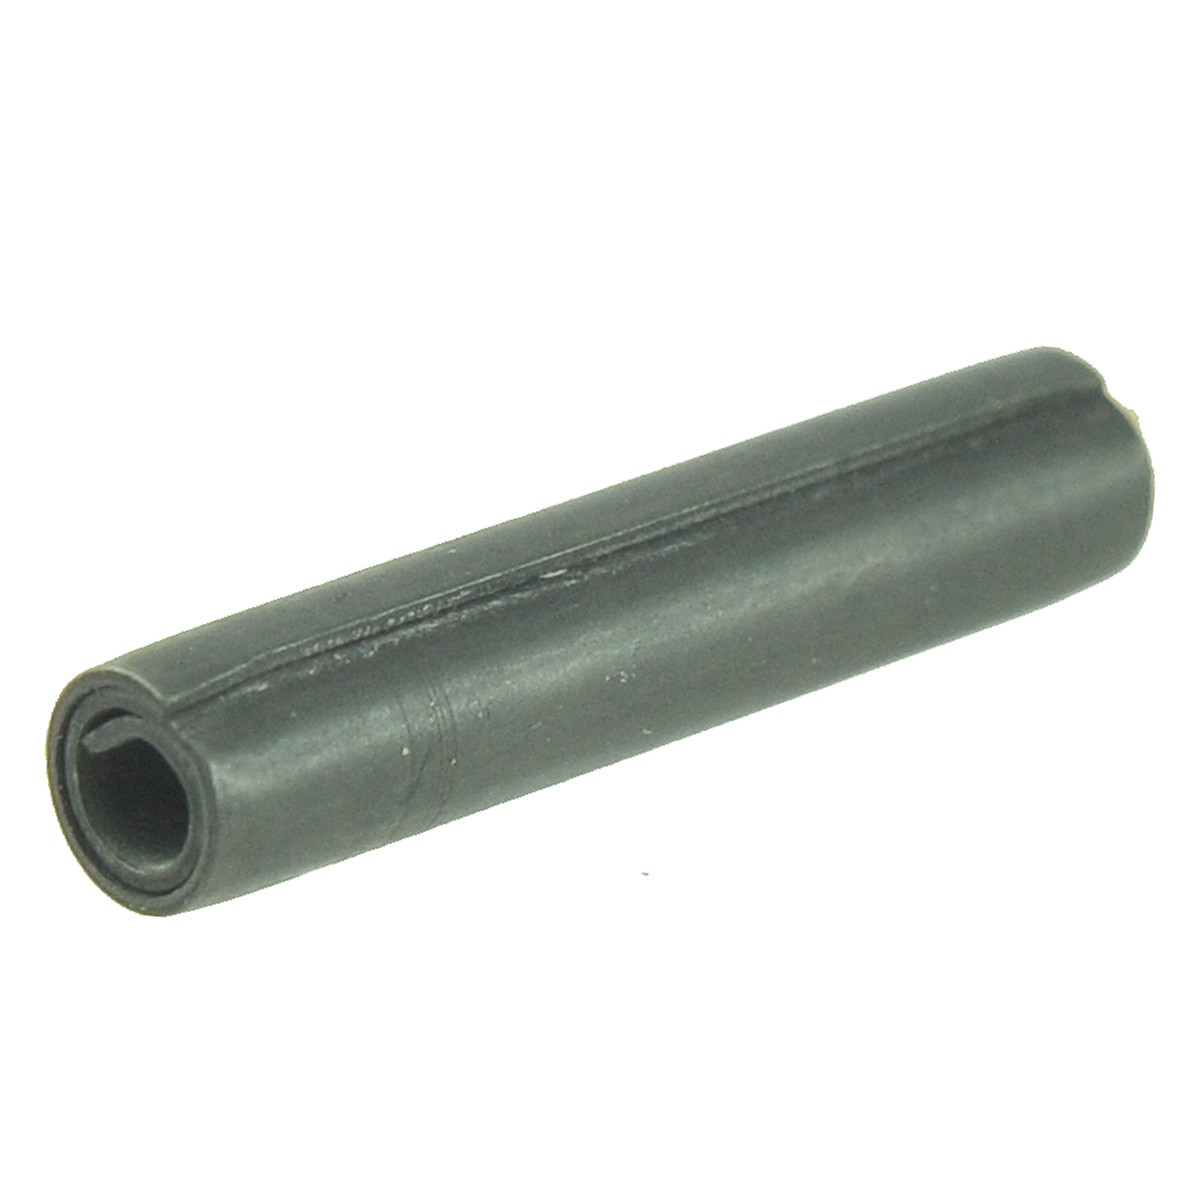 Spring roll pin 30 x 6 mm / LS MT 1.25 / LS X J25 / S447063012 / 40318822